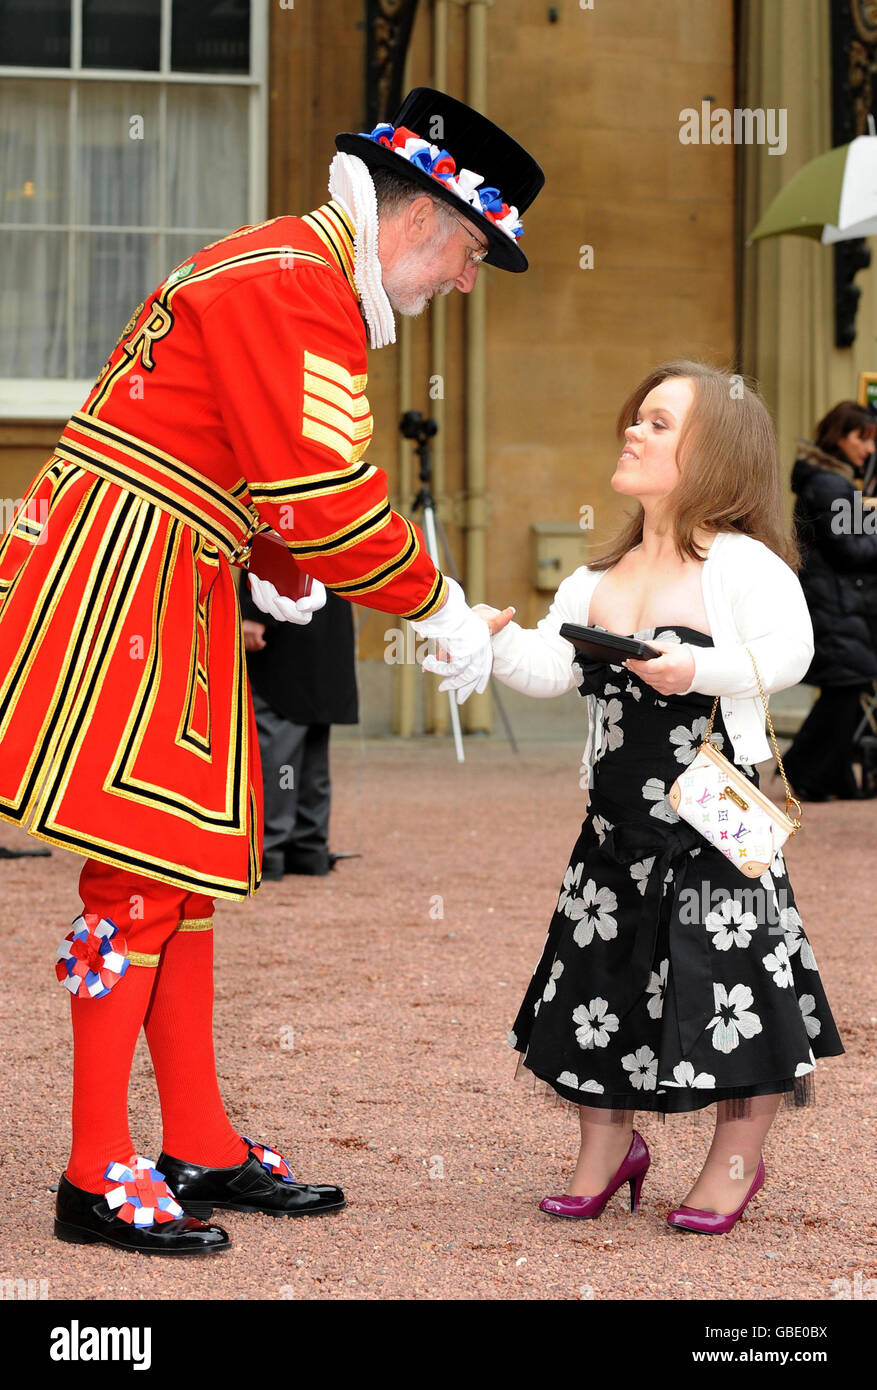 Yeoman Sergeant Roderick Truelove, die eine Royal Victorian Medal erhielt, gratuliert der Paralympischen Schwimmerin Eleanor Simmonds, nachdem sie ihren MBE von der britischen Königin Elizabeth II. Im Buckingham Palace, London, erhalten hat. Stockfoto